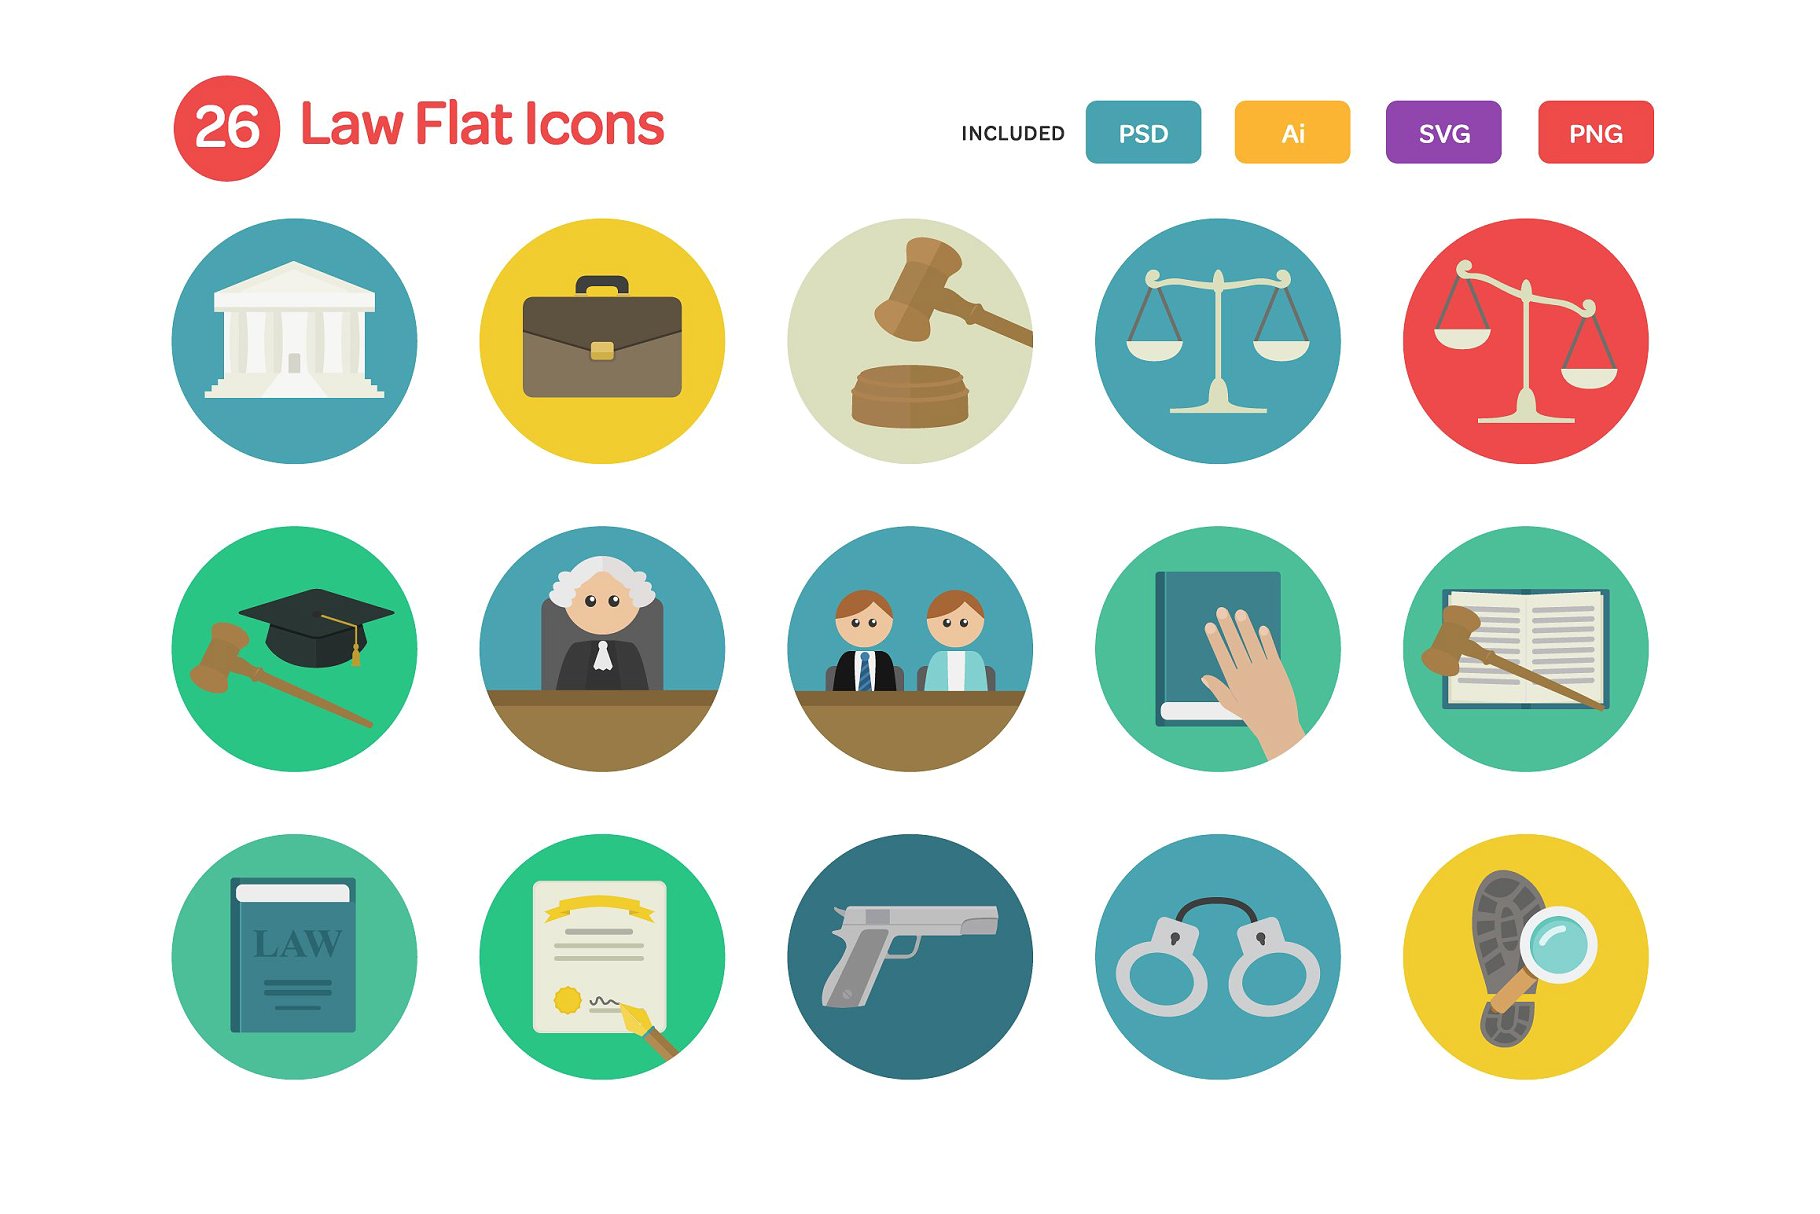 法律风格的扁平化图标 Law Flat Icons Set